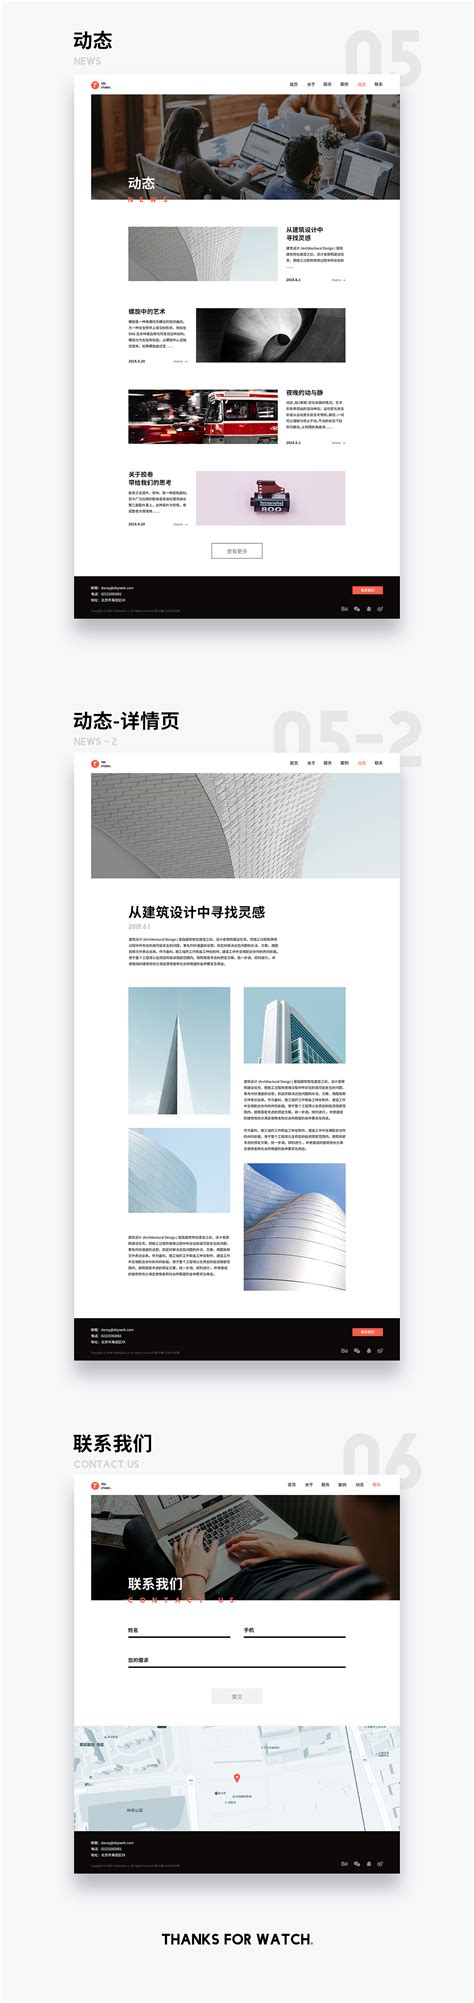 设计工作室网站网页模板源码素材免费下载_红动中国